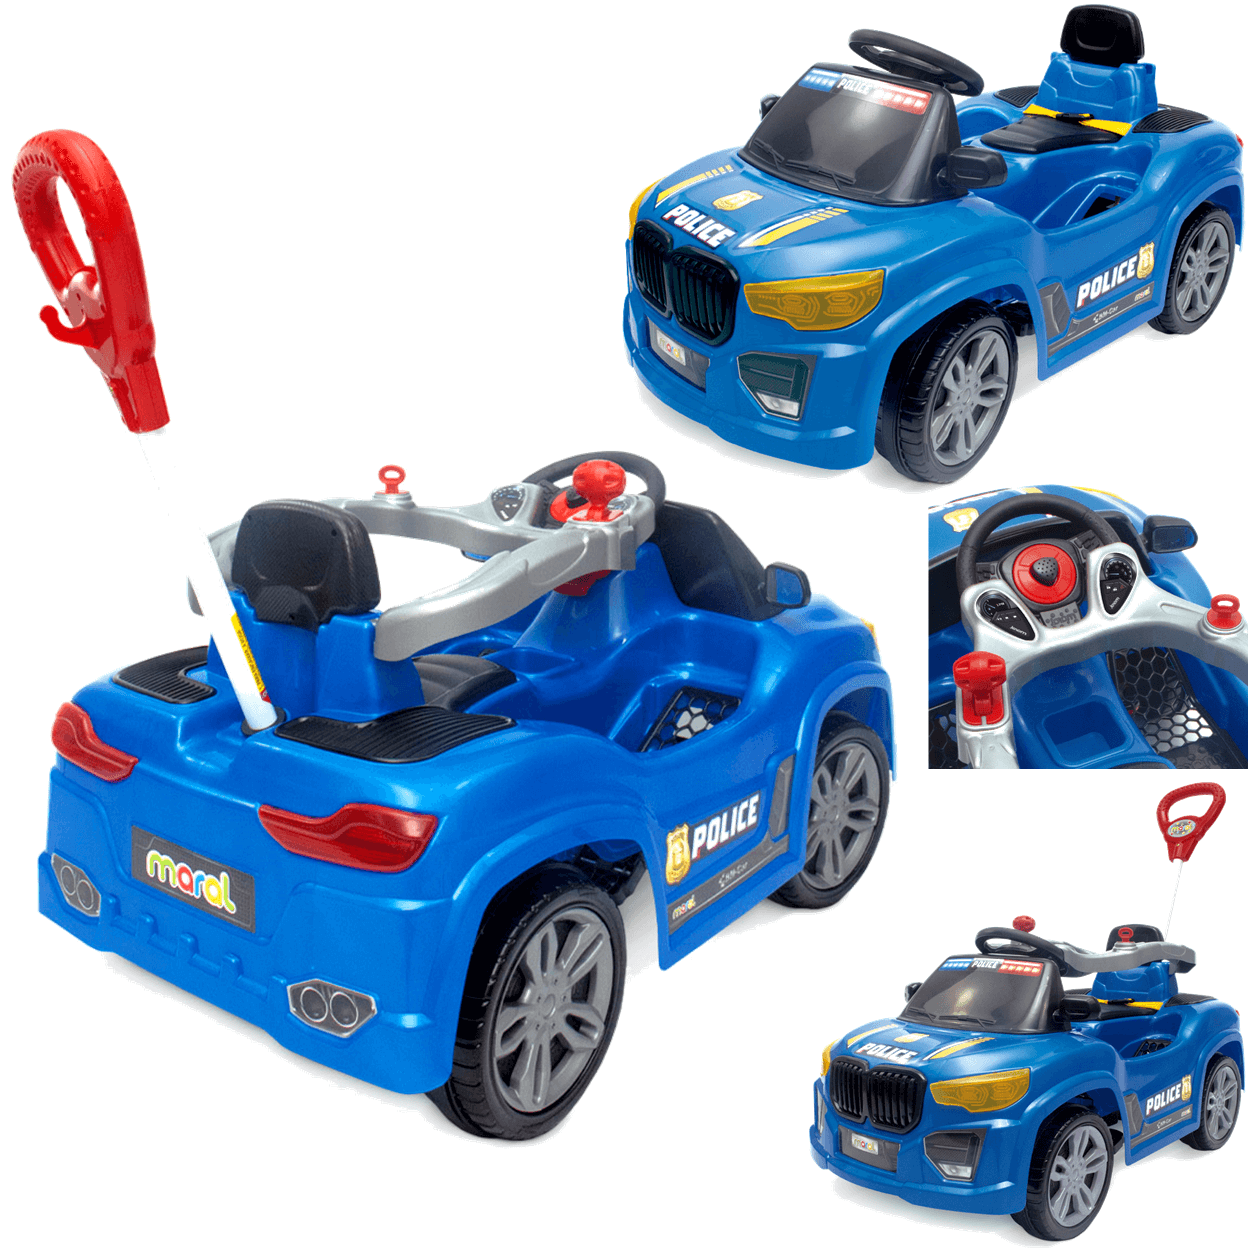 Carrinho de Passeio e Pedal Infantil Maral Bm Car Azul Police - 2